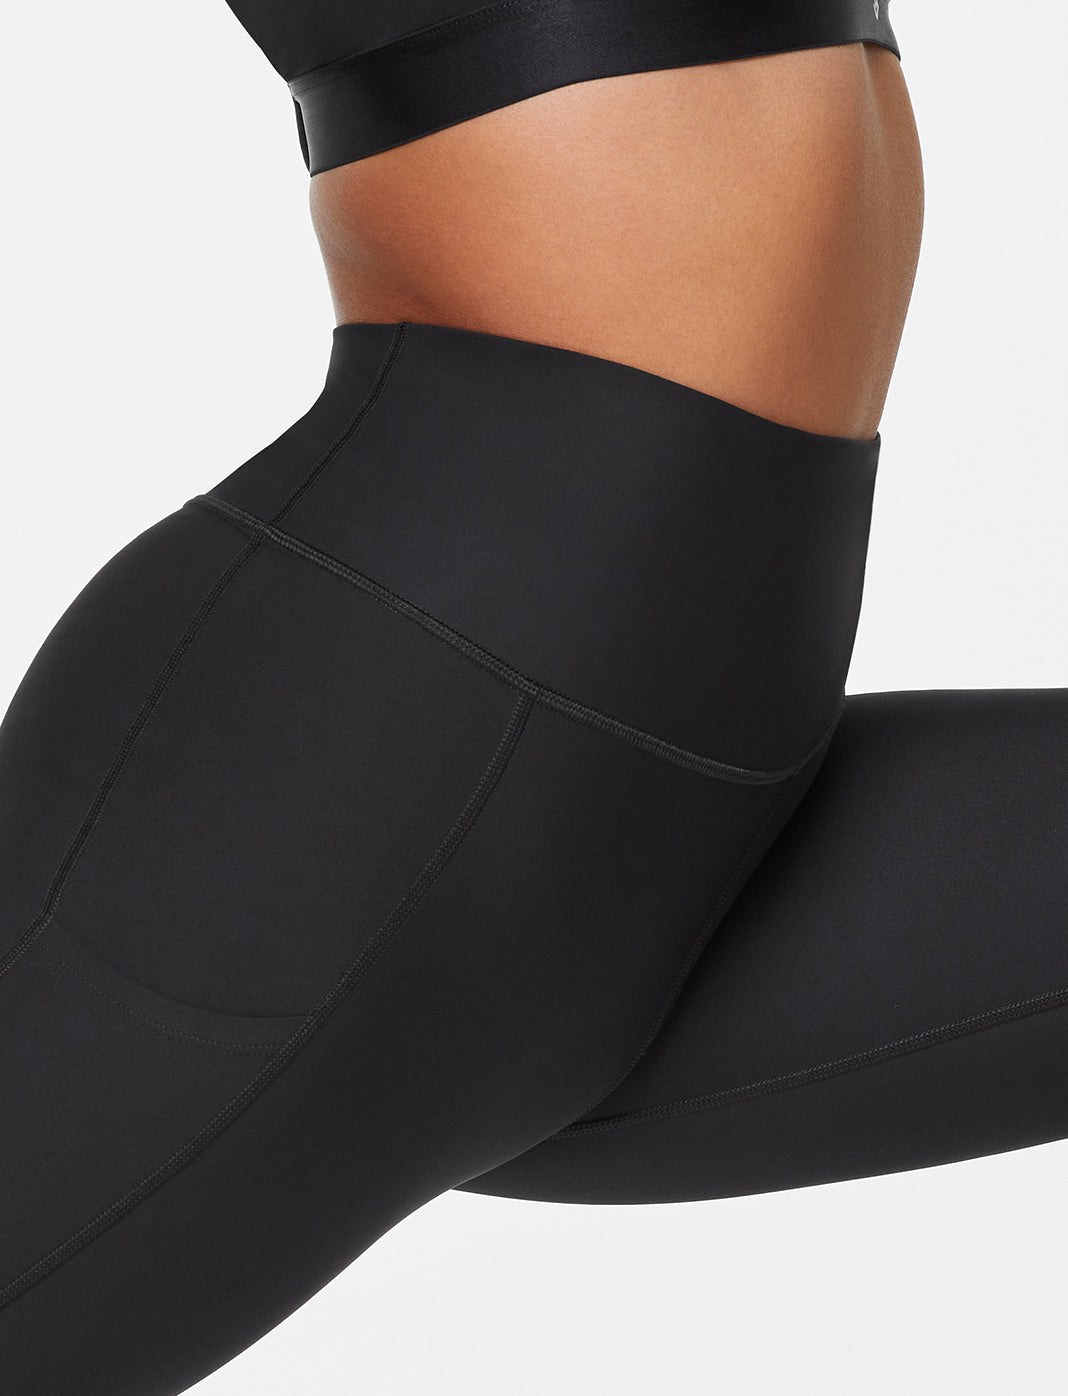 Elite Pocket Leggings - Black  Love fitness apparel, Pocket leggings,  Leggings